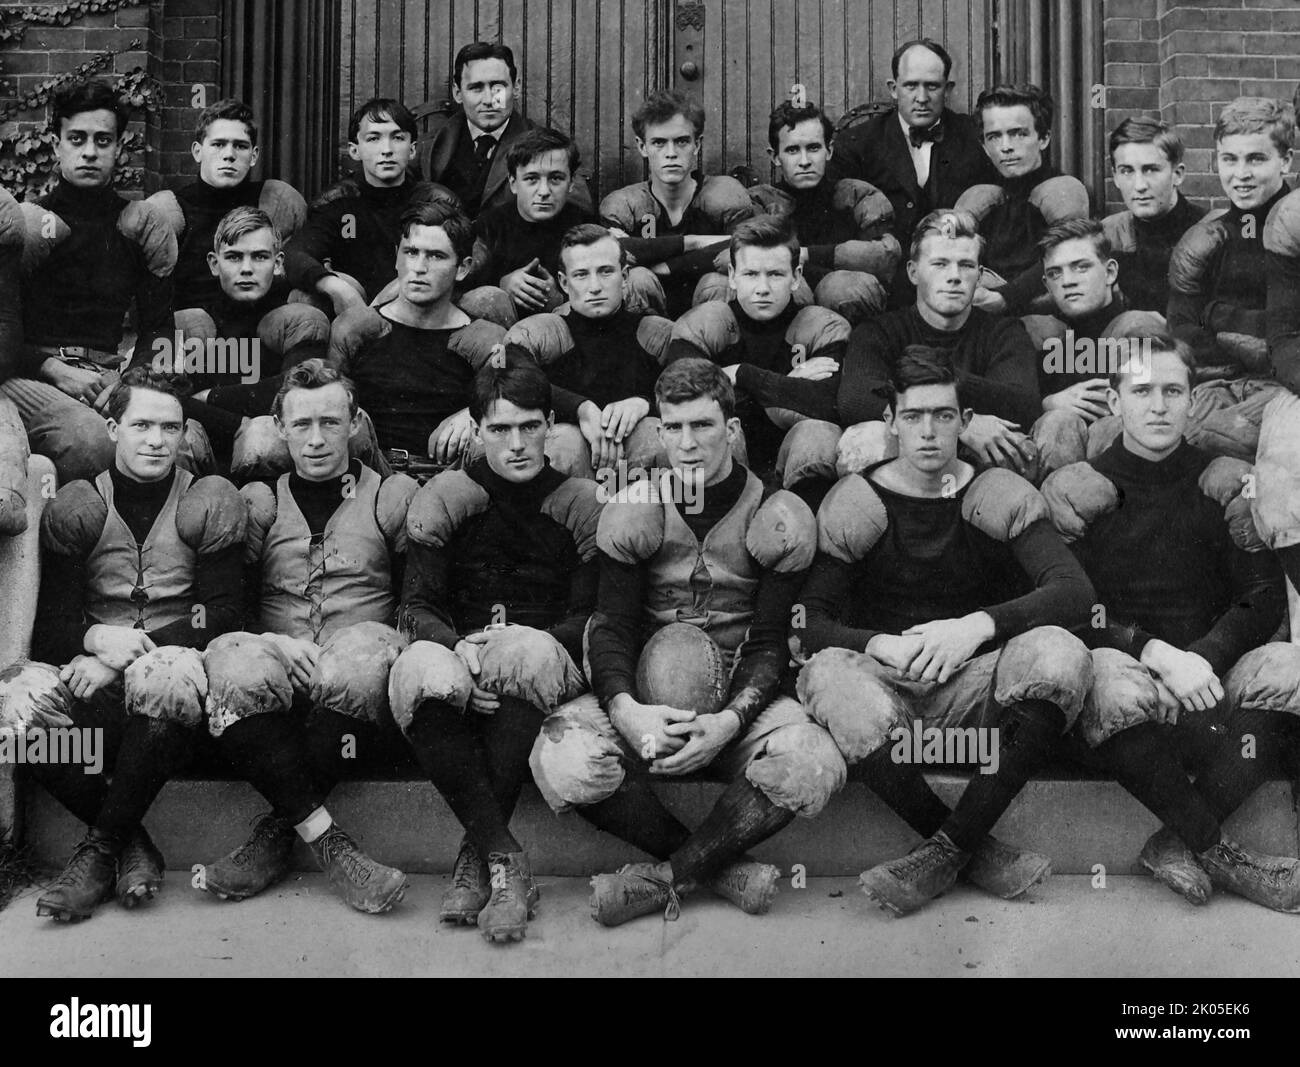 Ritratto della squadra di calcio della scuola superiore nel New England, ca. 1920. Foto Stock